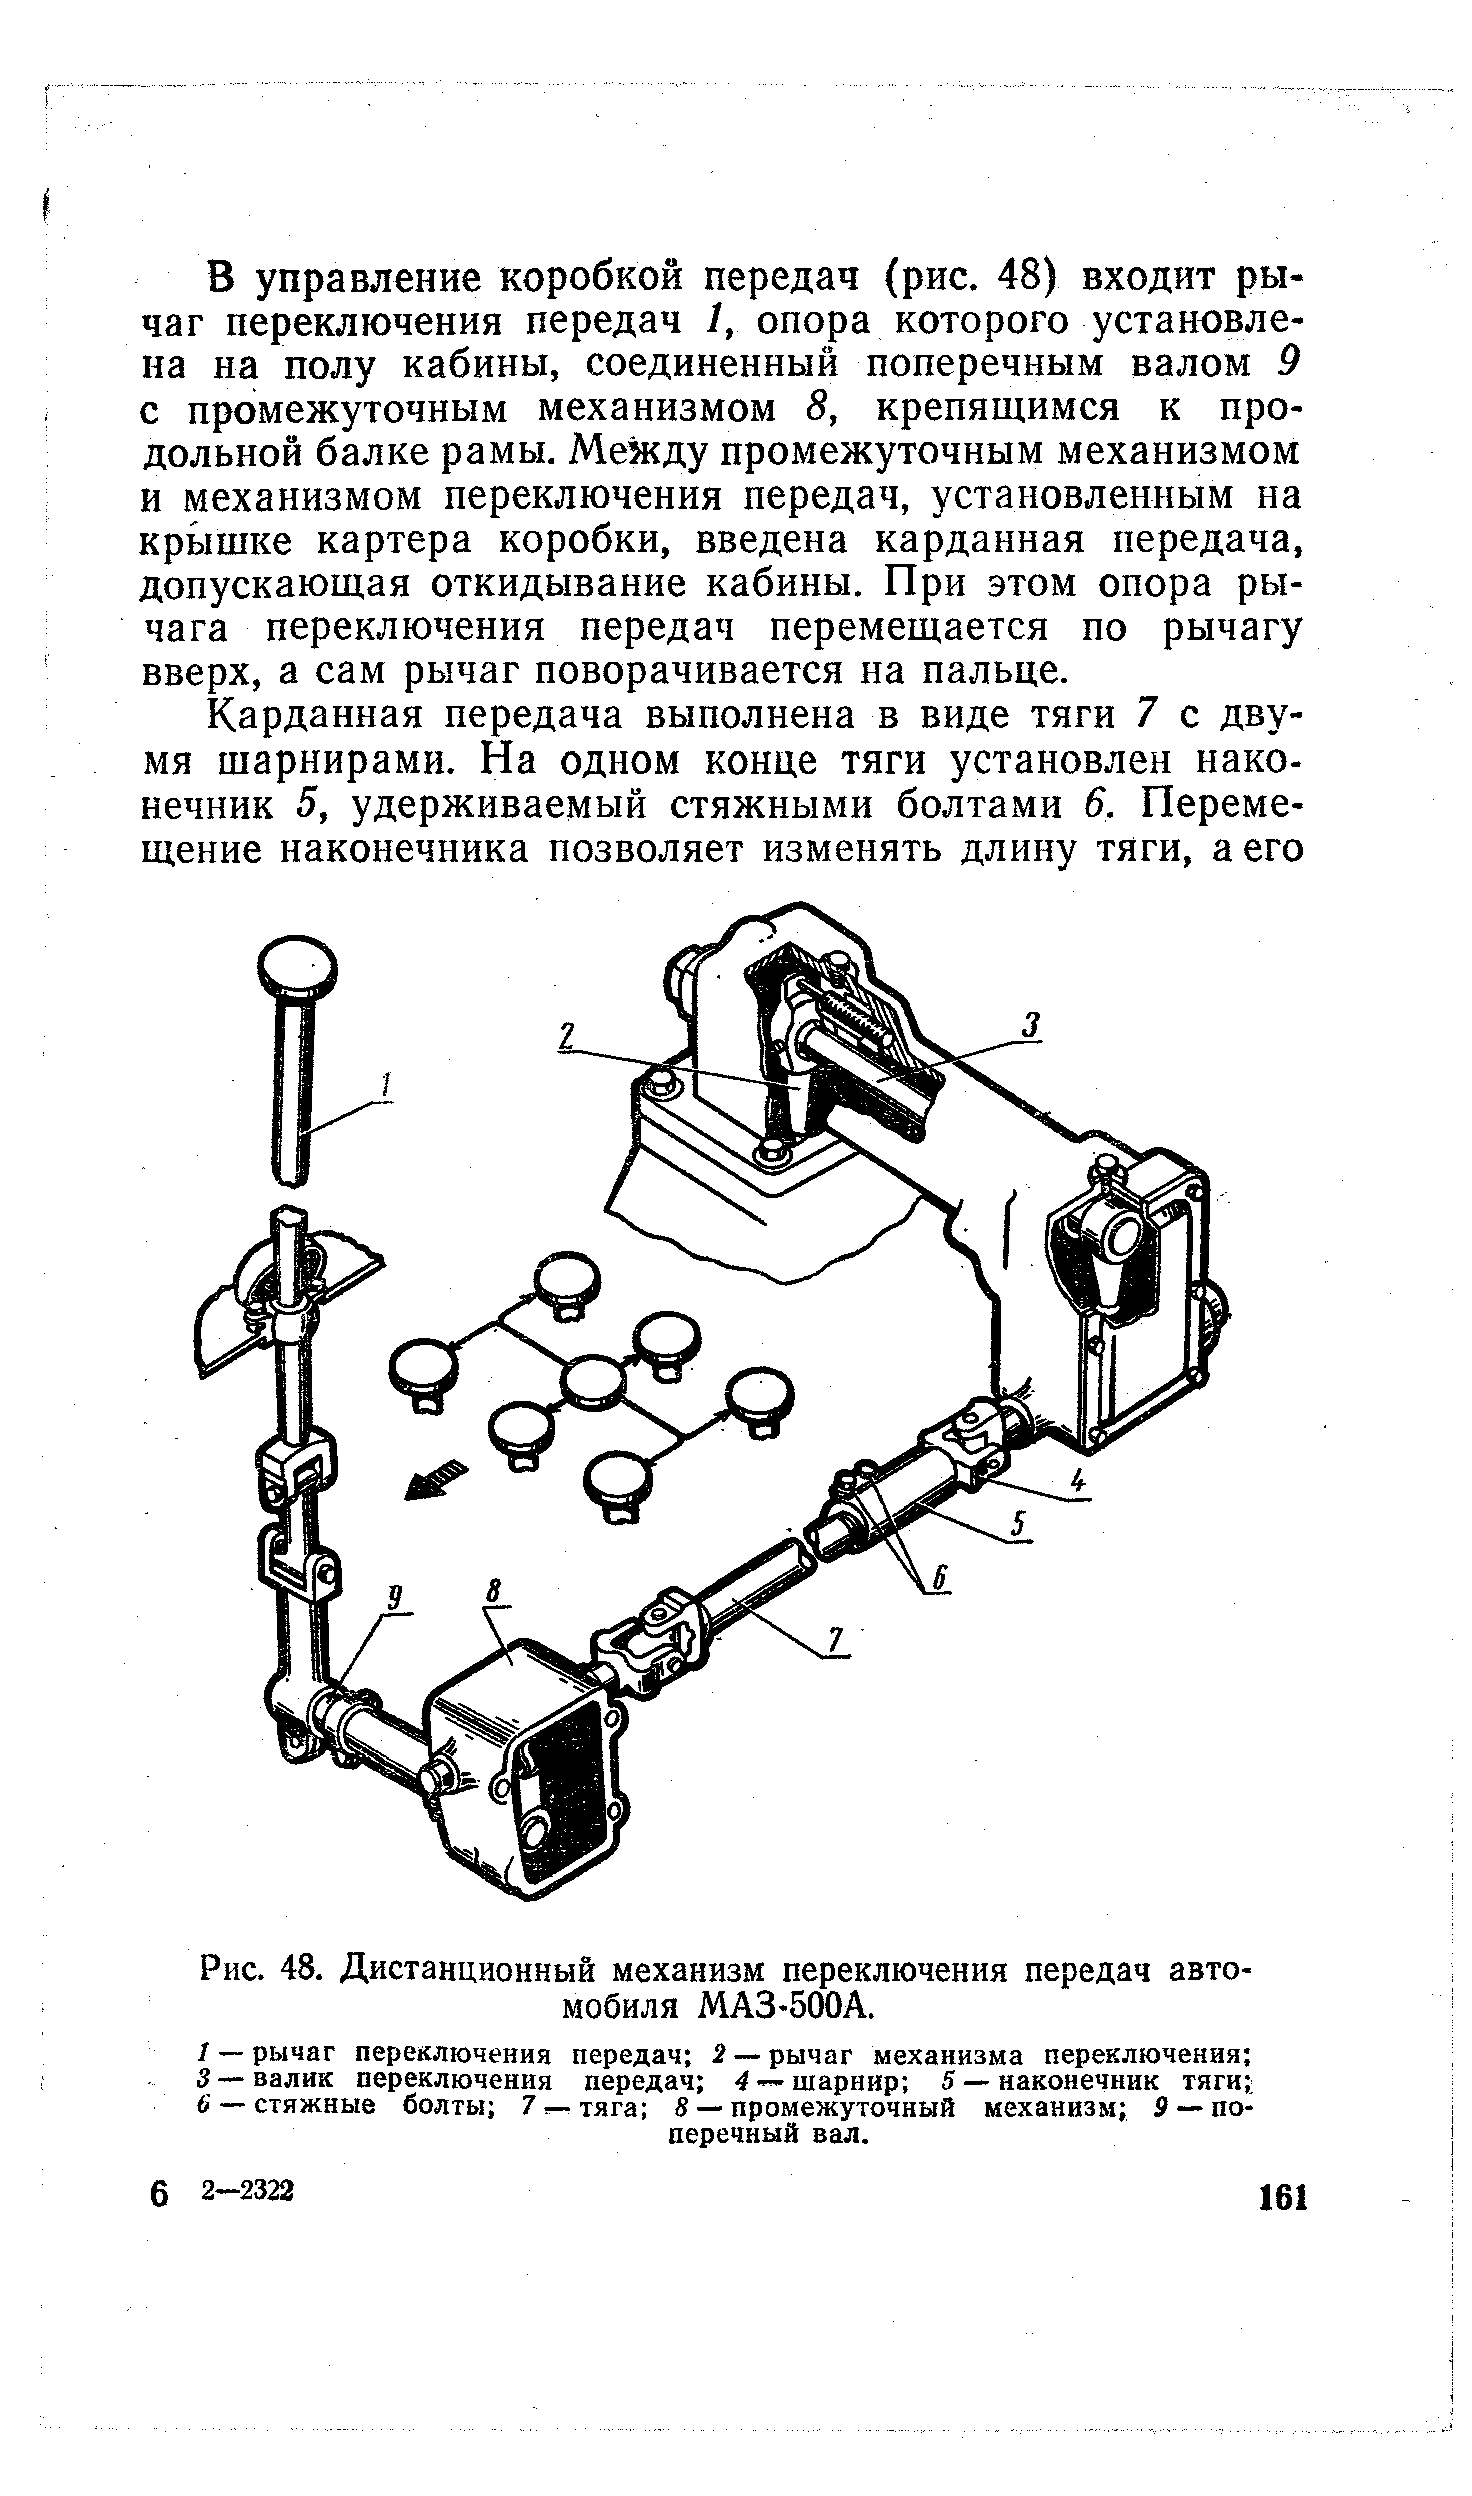 Рис. 48. Дистанционный механизм переключения передач автомобиля МАЗ-500А.
